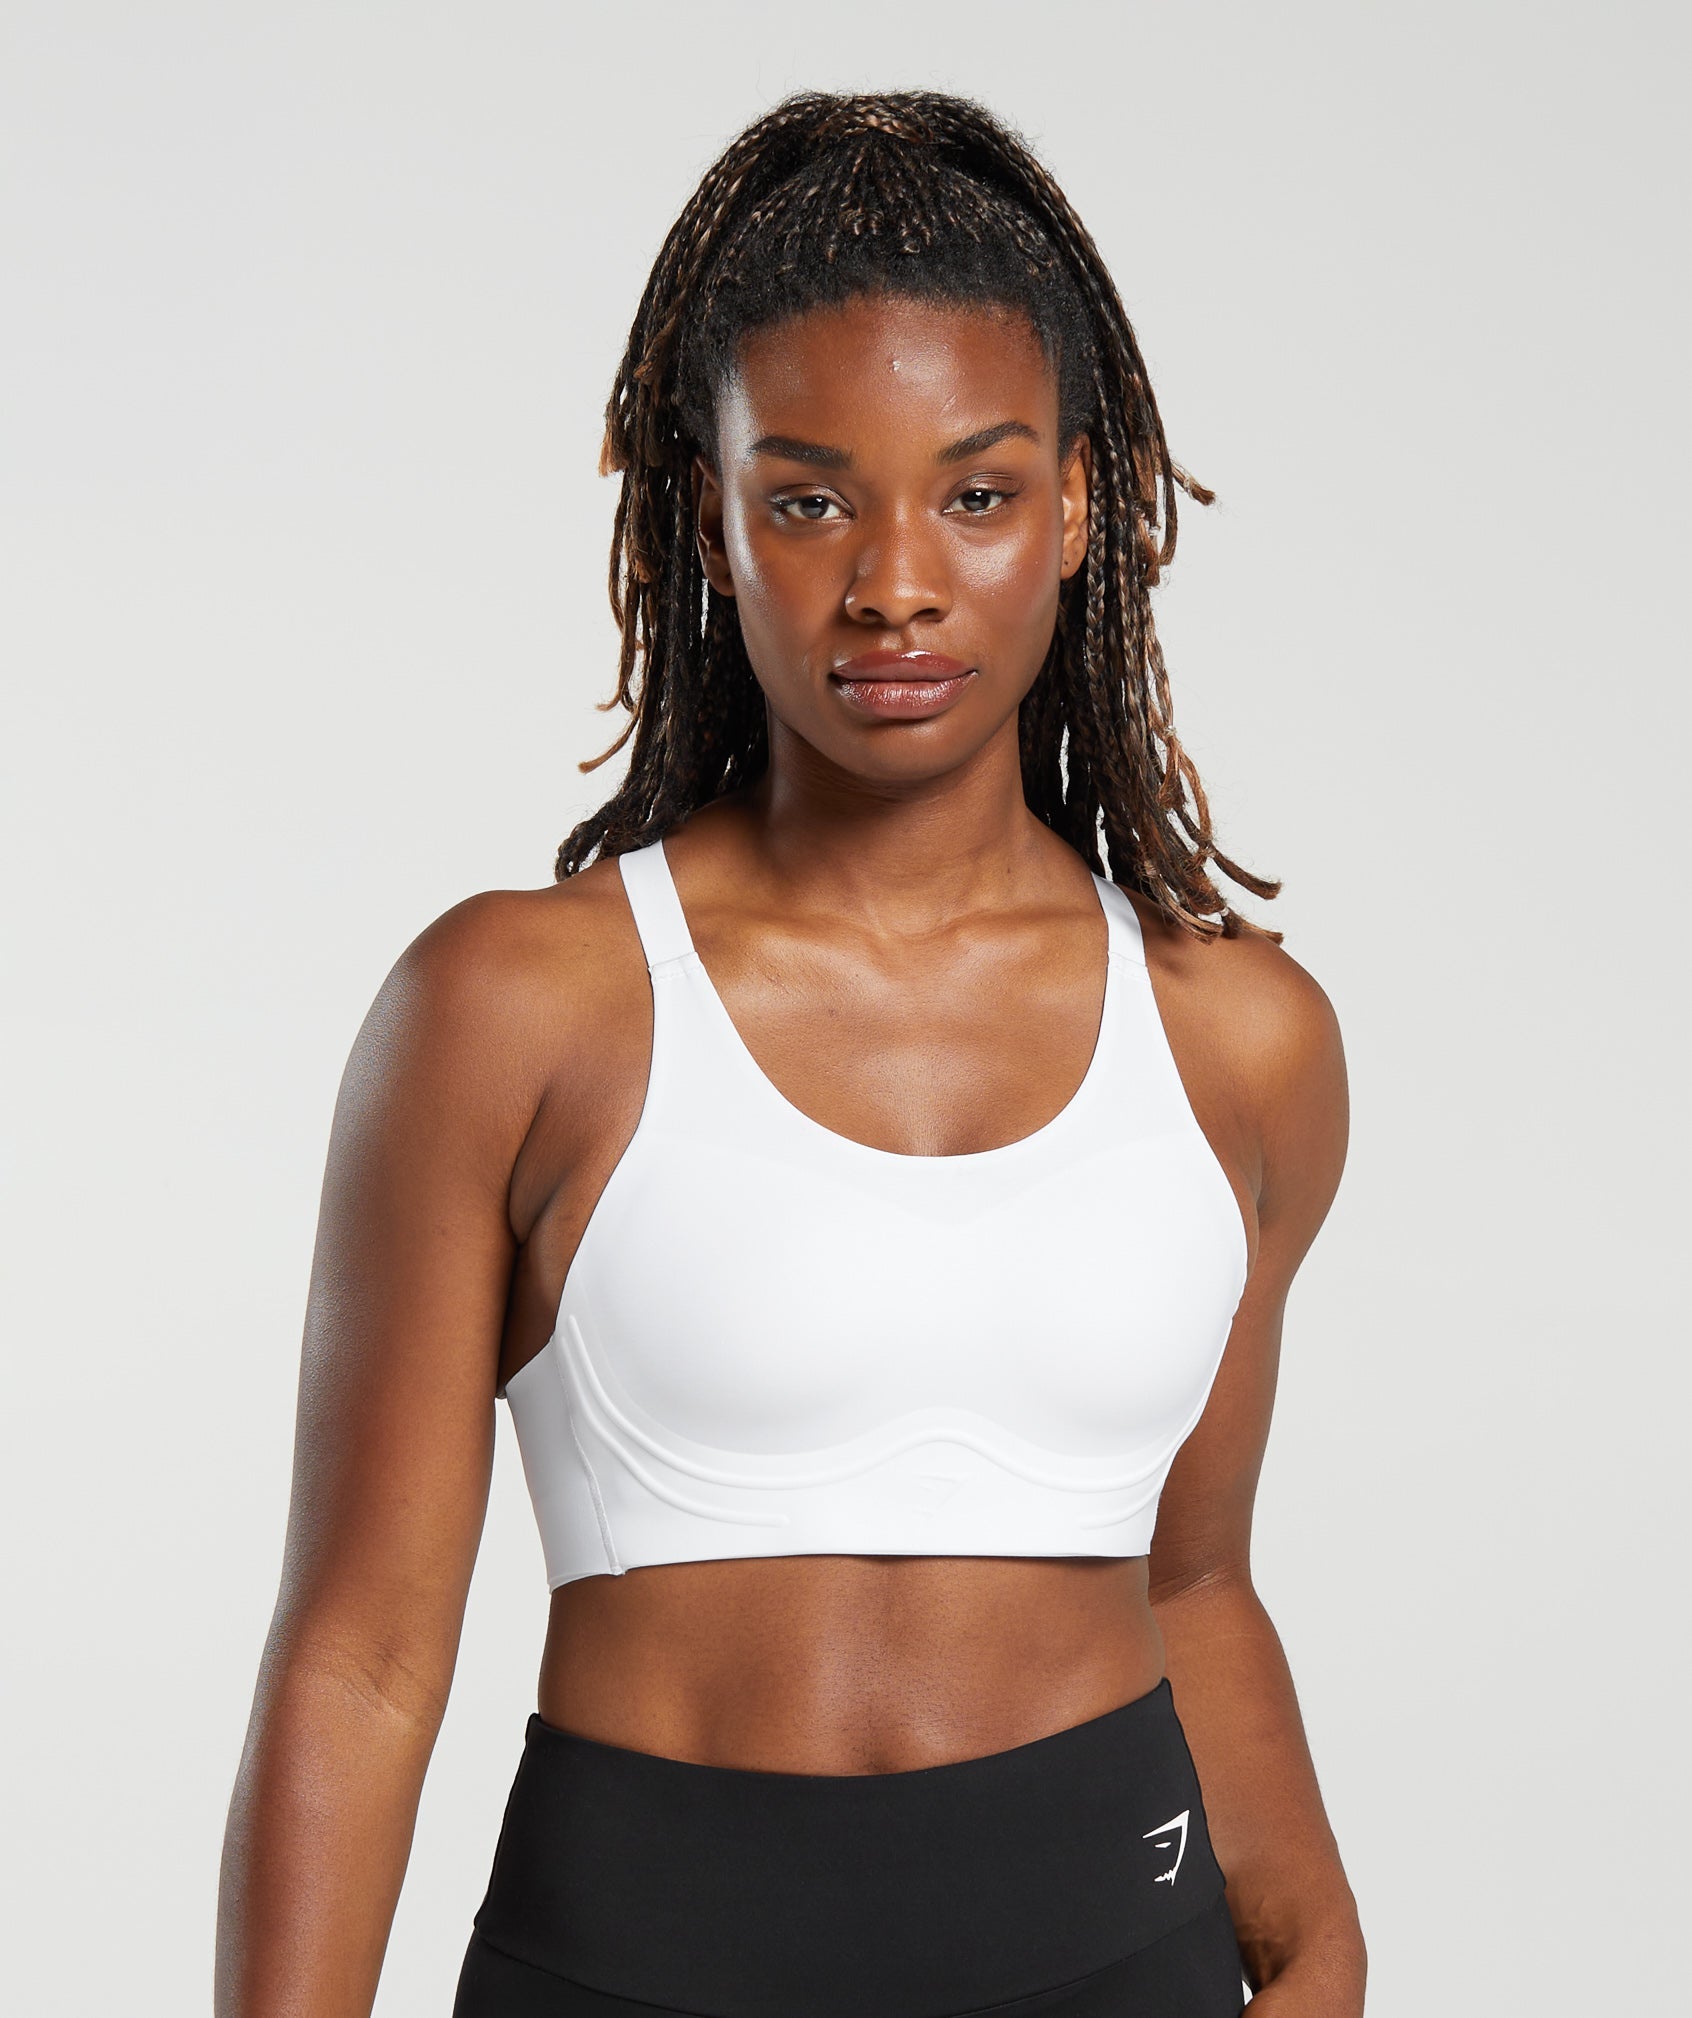 Buy GlamLine One Shoulder Sports Bra for Women, Workout Bras Cross